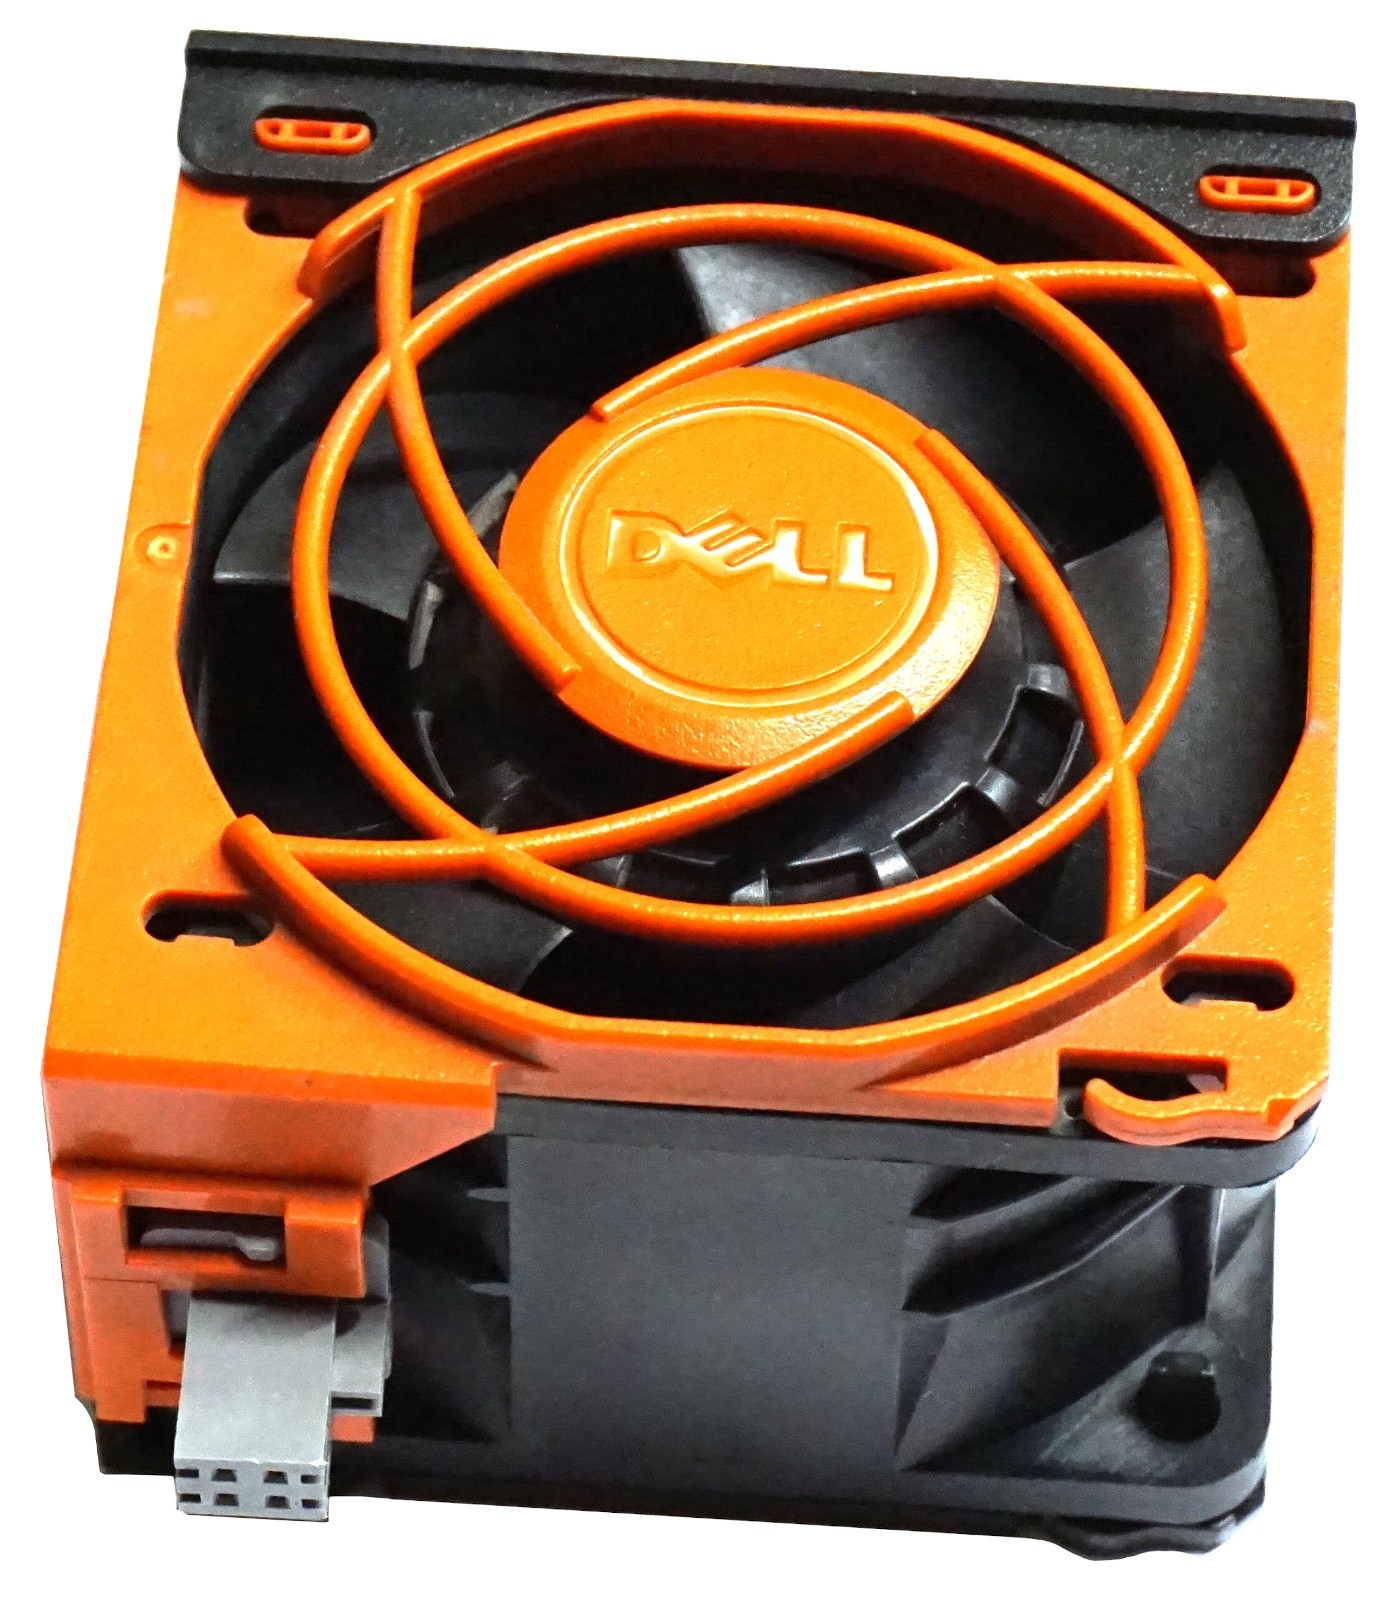 Dell PowerEdge R730, R730XD, NX3230, DL4300 Fan